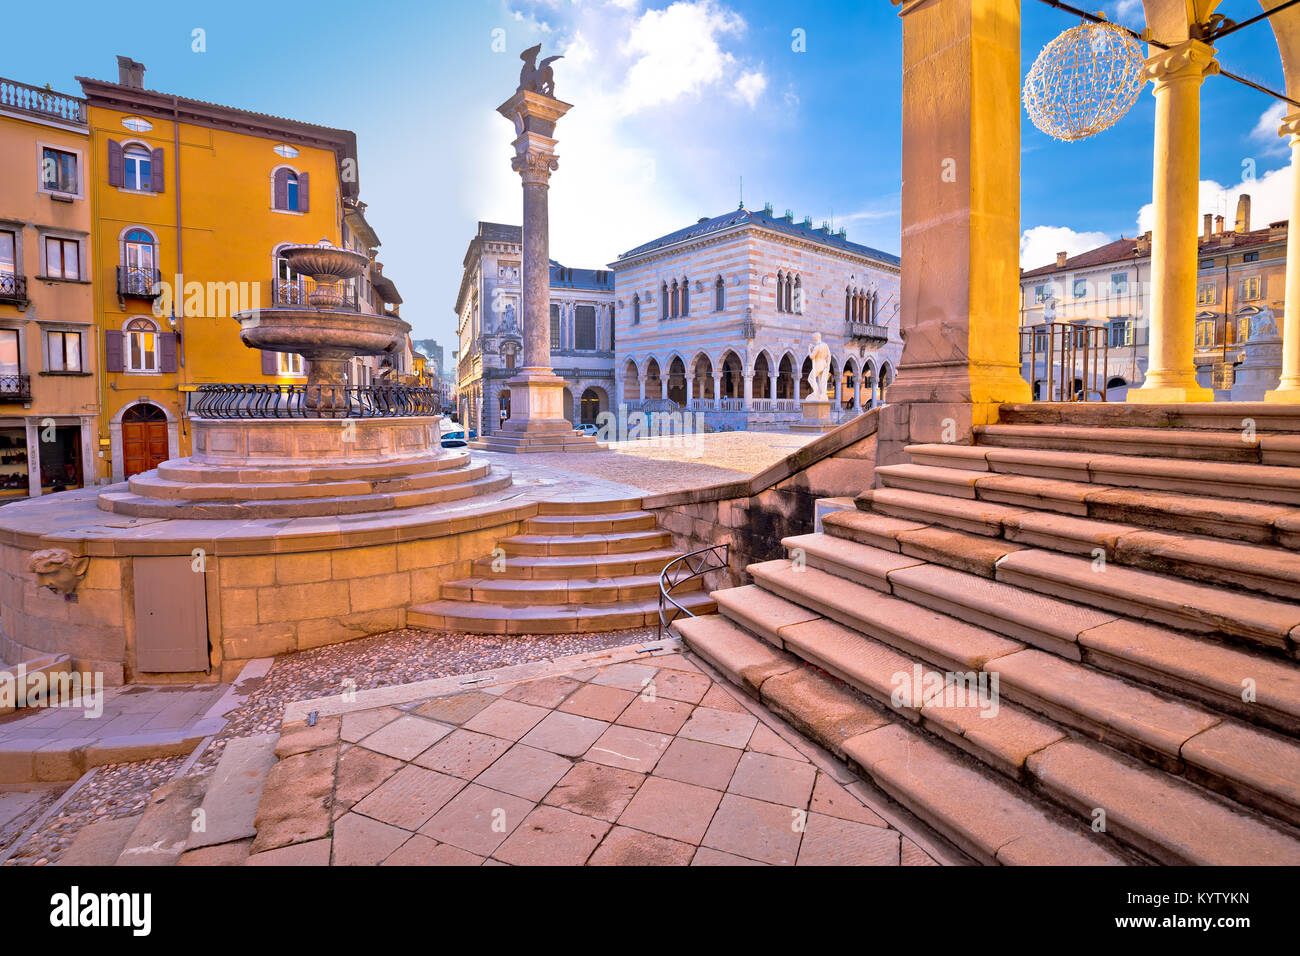 Antica piazza italiana archi e architettura nella città di Udine, regione Friuli Venezia Giulia di Italia Foto Stock